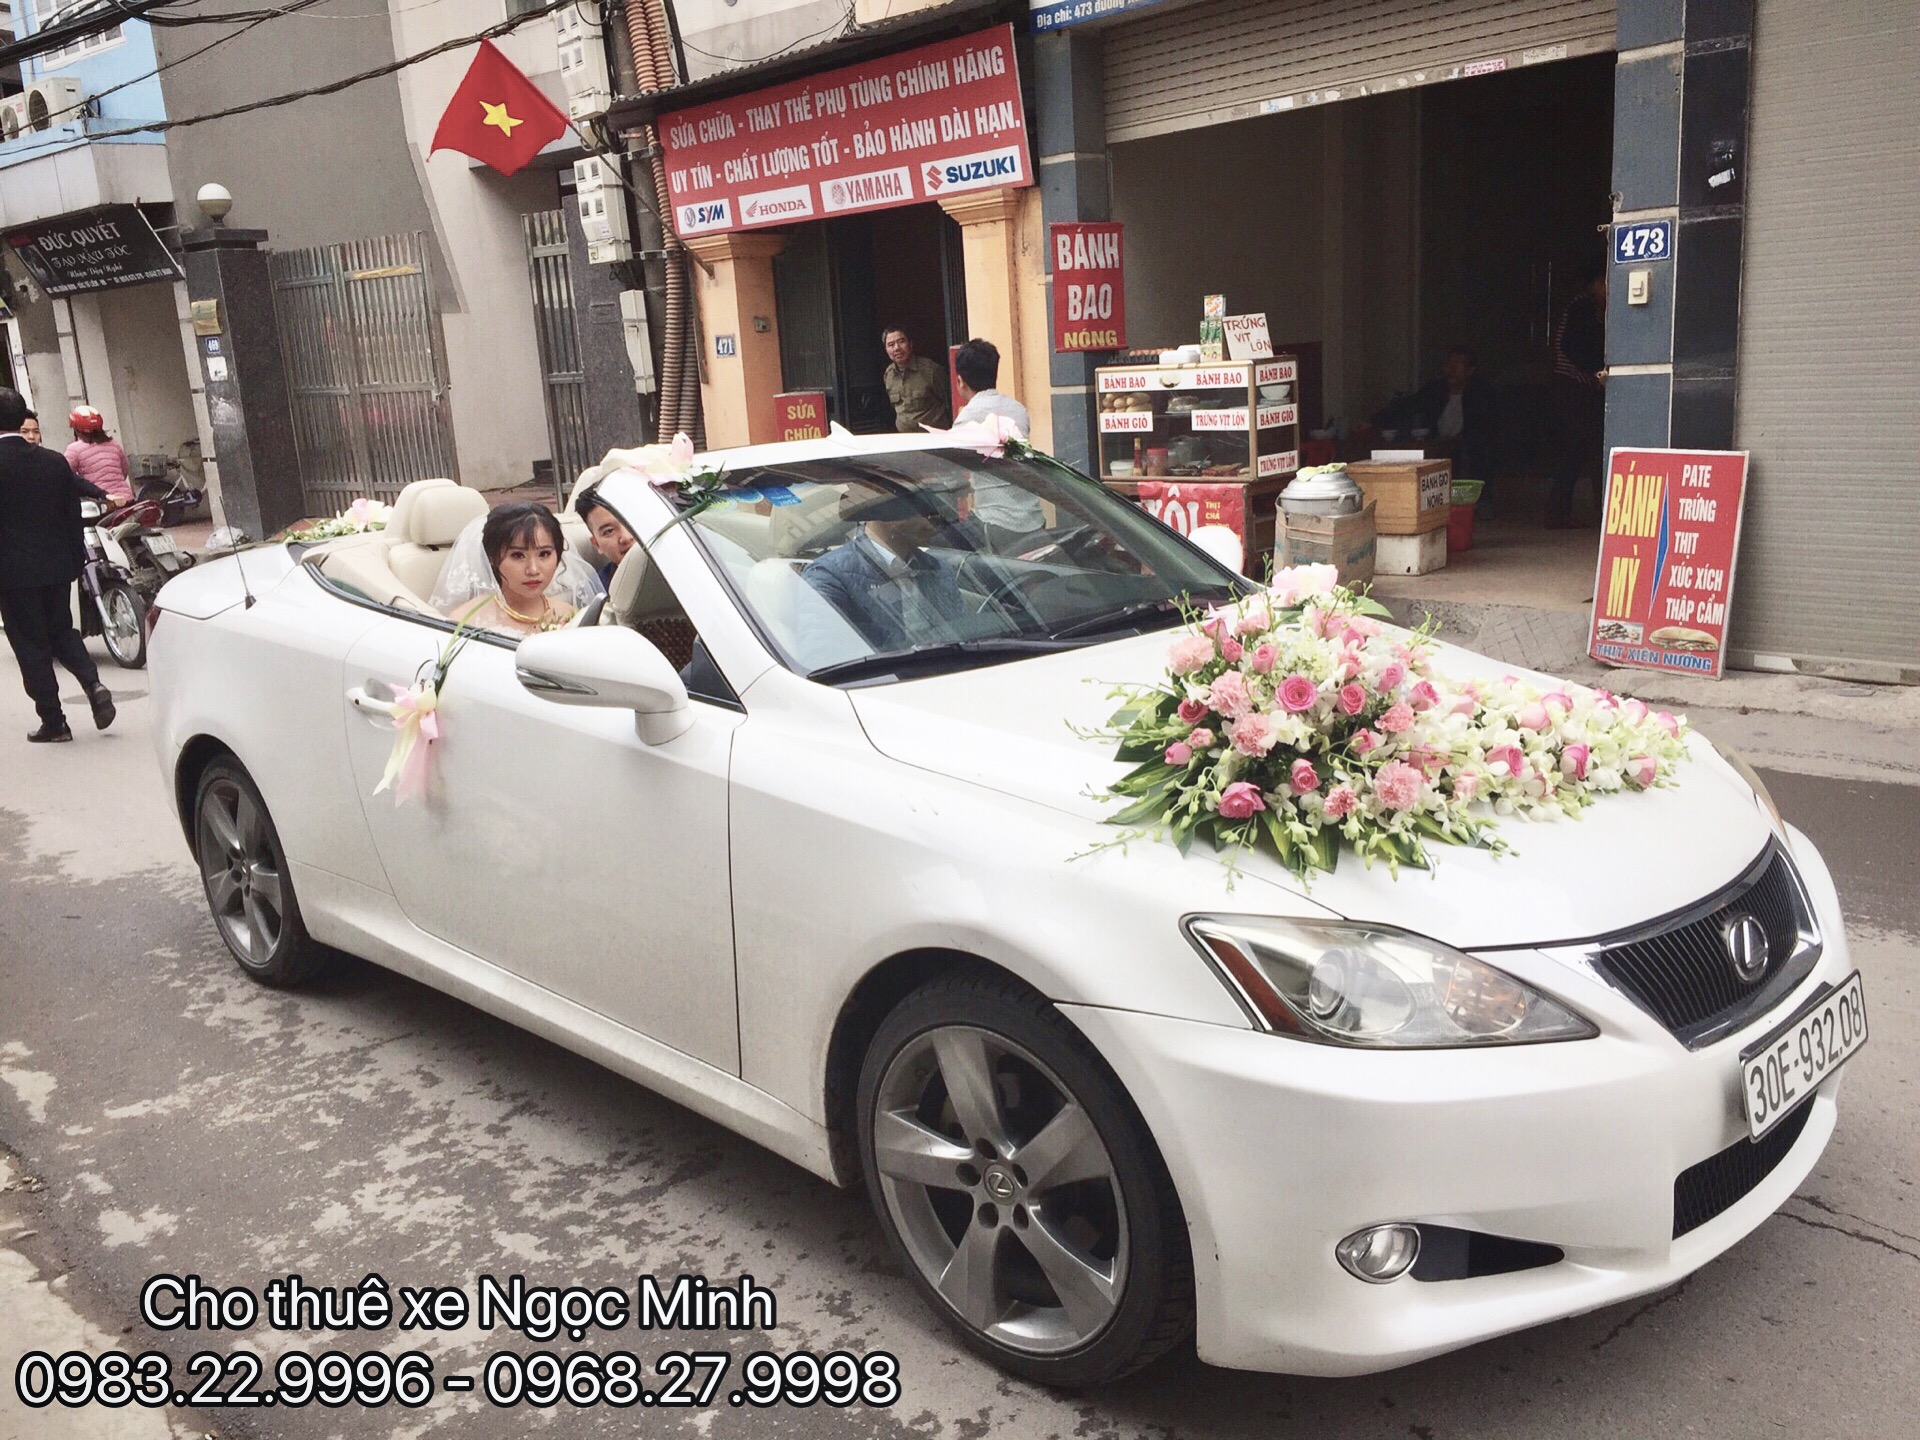 Thuê xe cưới Lexus tại Hà Nội